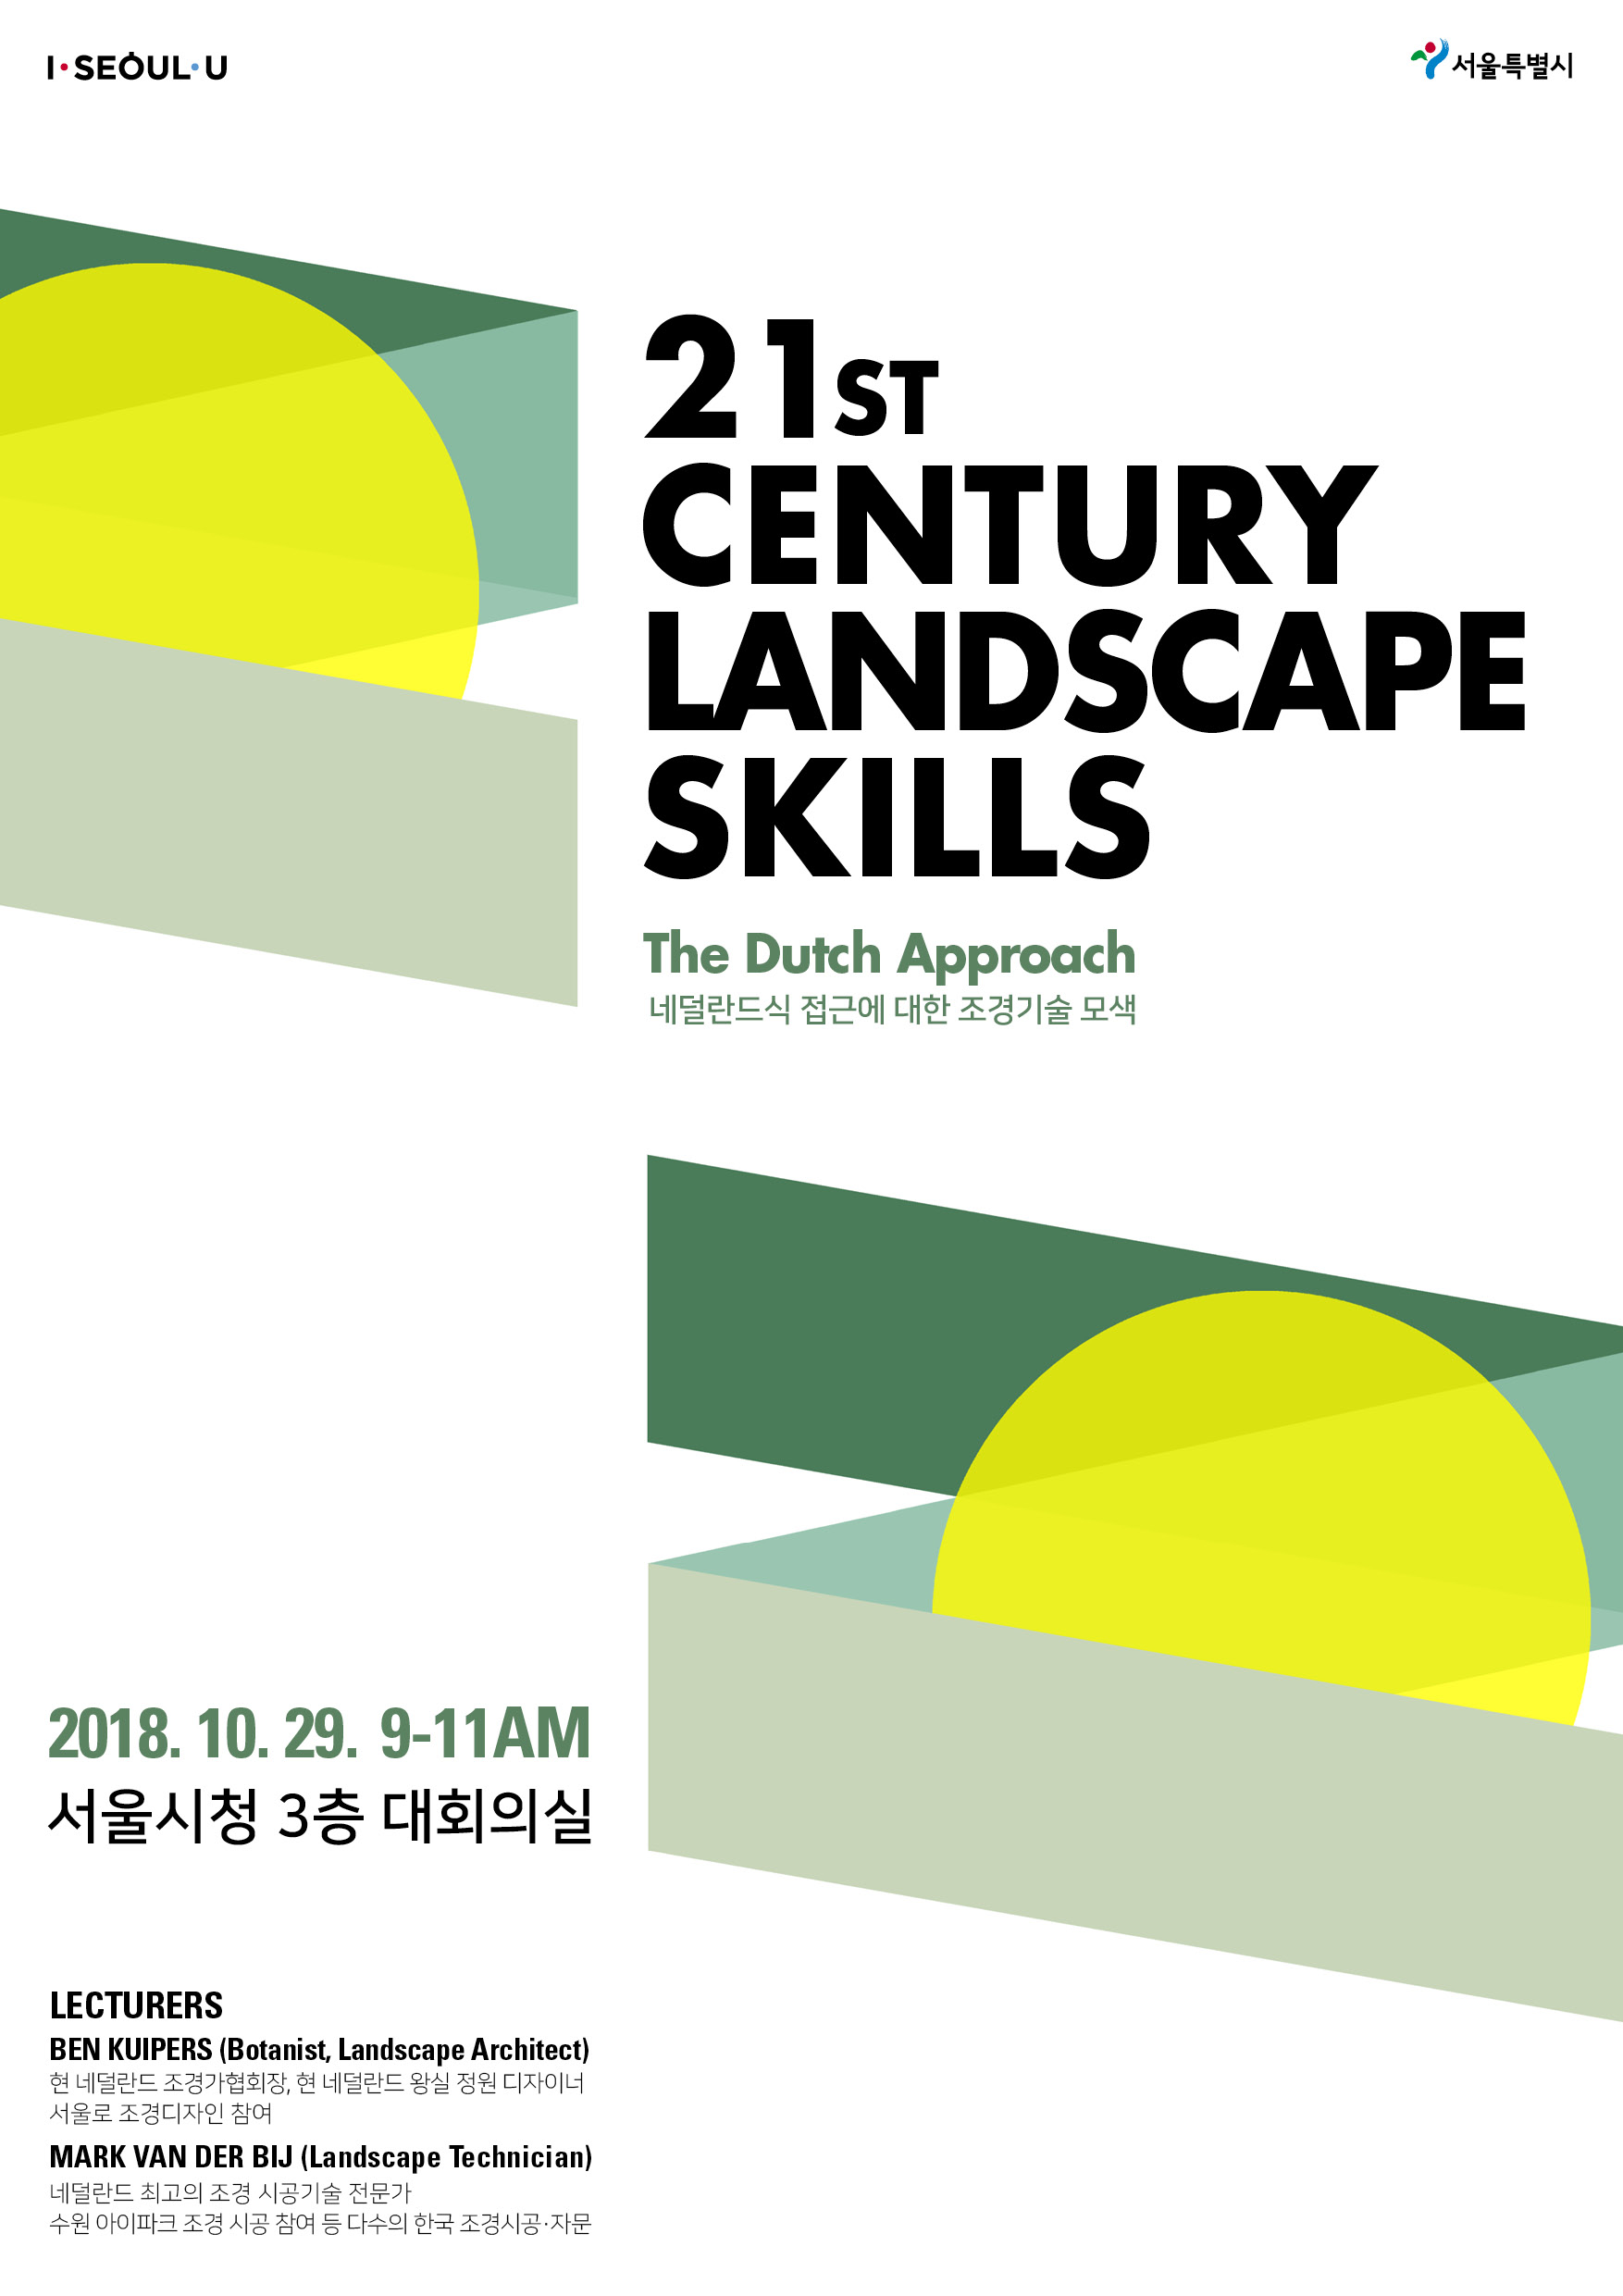 1029 서울시청_21st Century Landscape Skills(포스터)수정